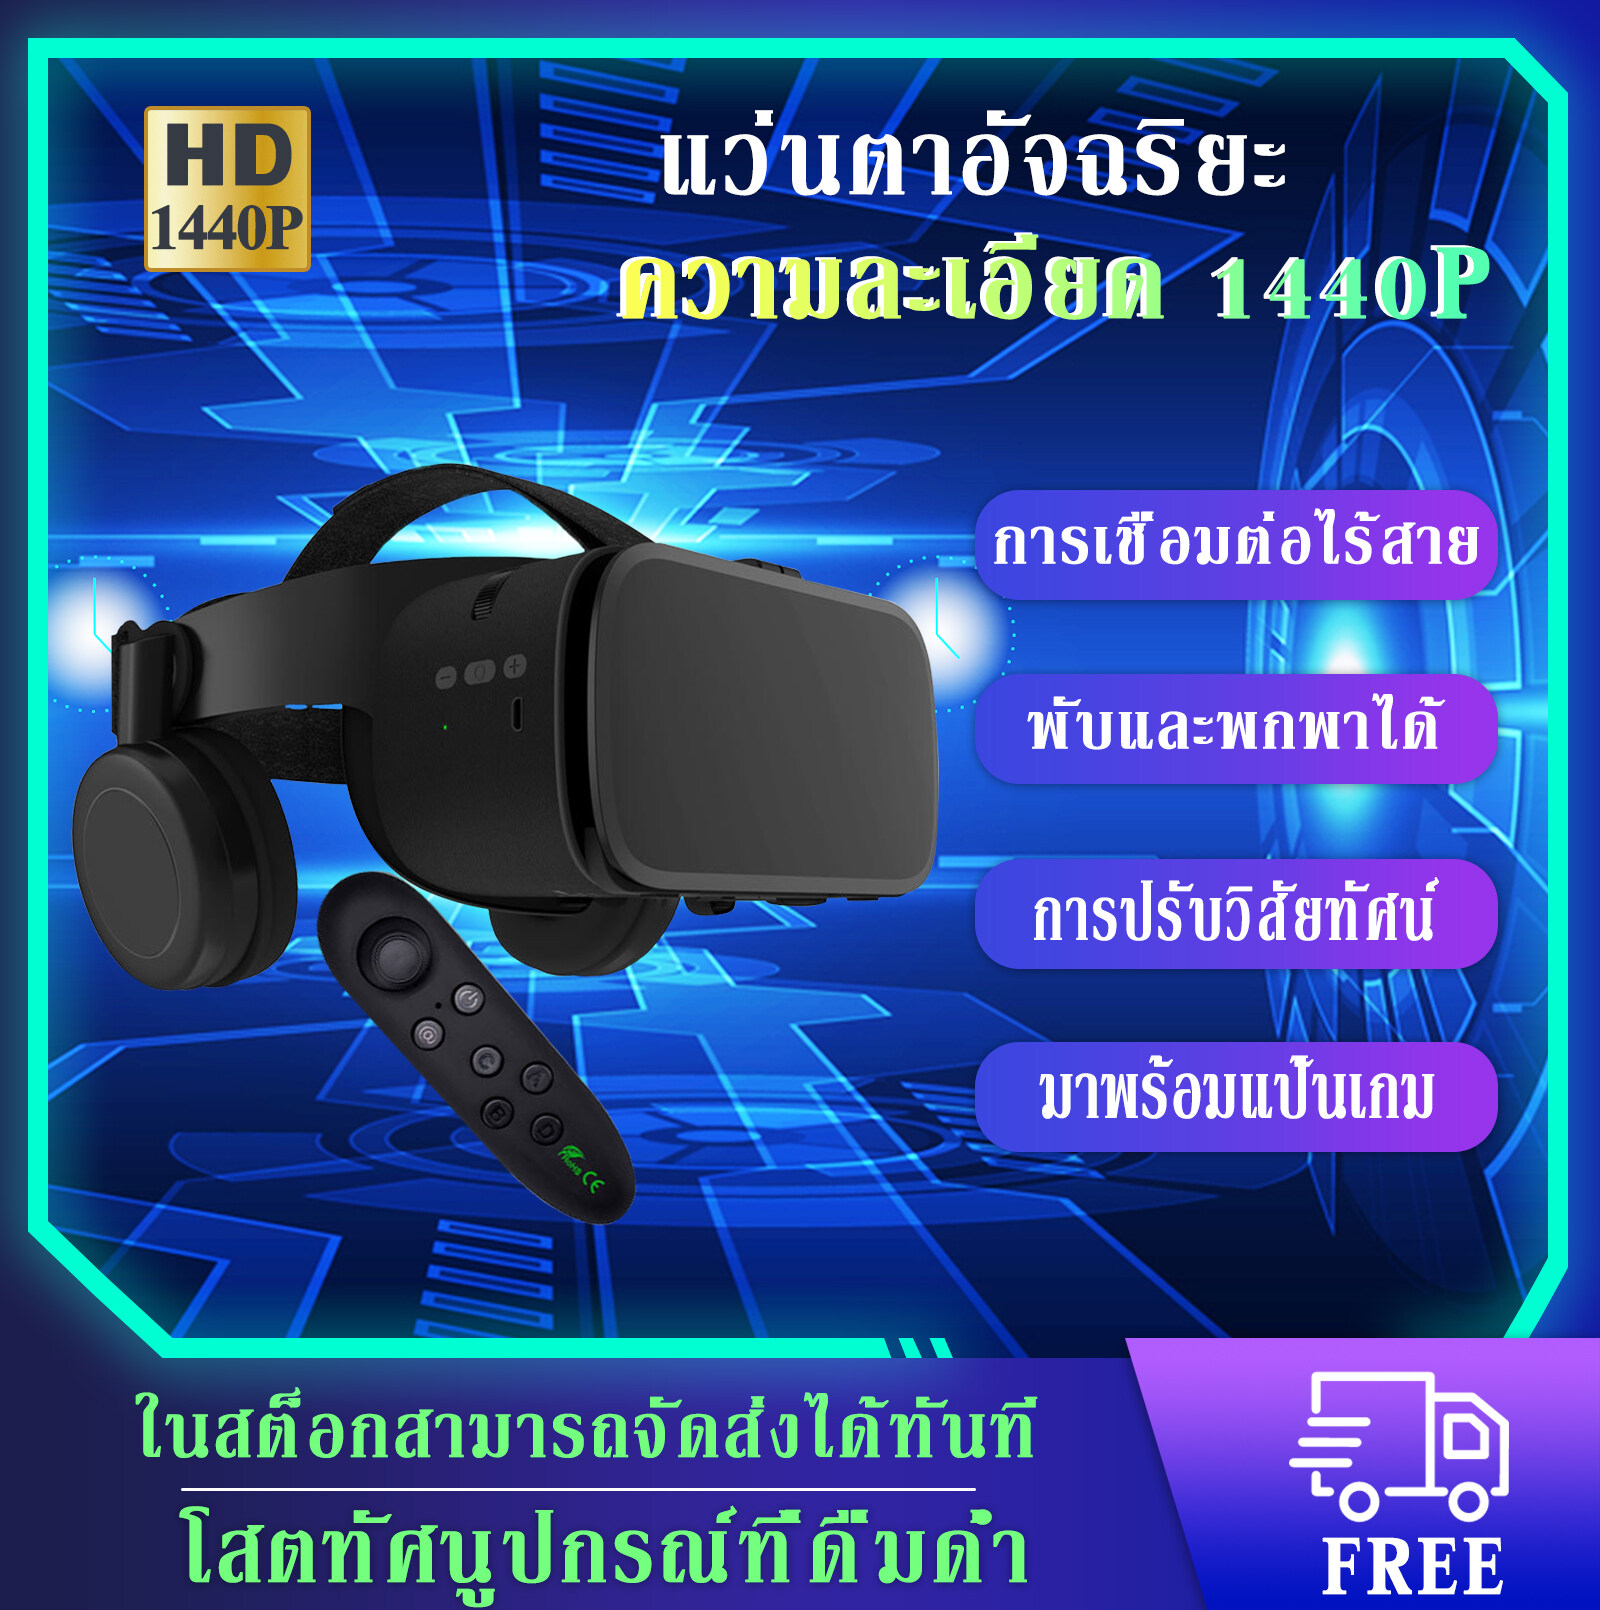 🔥 จัดส่งทันที 🔥GZR แว่น VR แว่นตา VR แว่นตา 3D Three-in-one VR glasses ประสบการณ์ภาพที่สมจริงเป็นพิเศษ 360 ° เสียงสเตอริโอ3D แว่นตา แว่นดูหนัง สำหรับสมาร์ทโฟน vr โรงหนัง แว่นตาภาพยนตร์ รองรับมือถือขนาด 4.7 - 6.5 นิ้ว